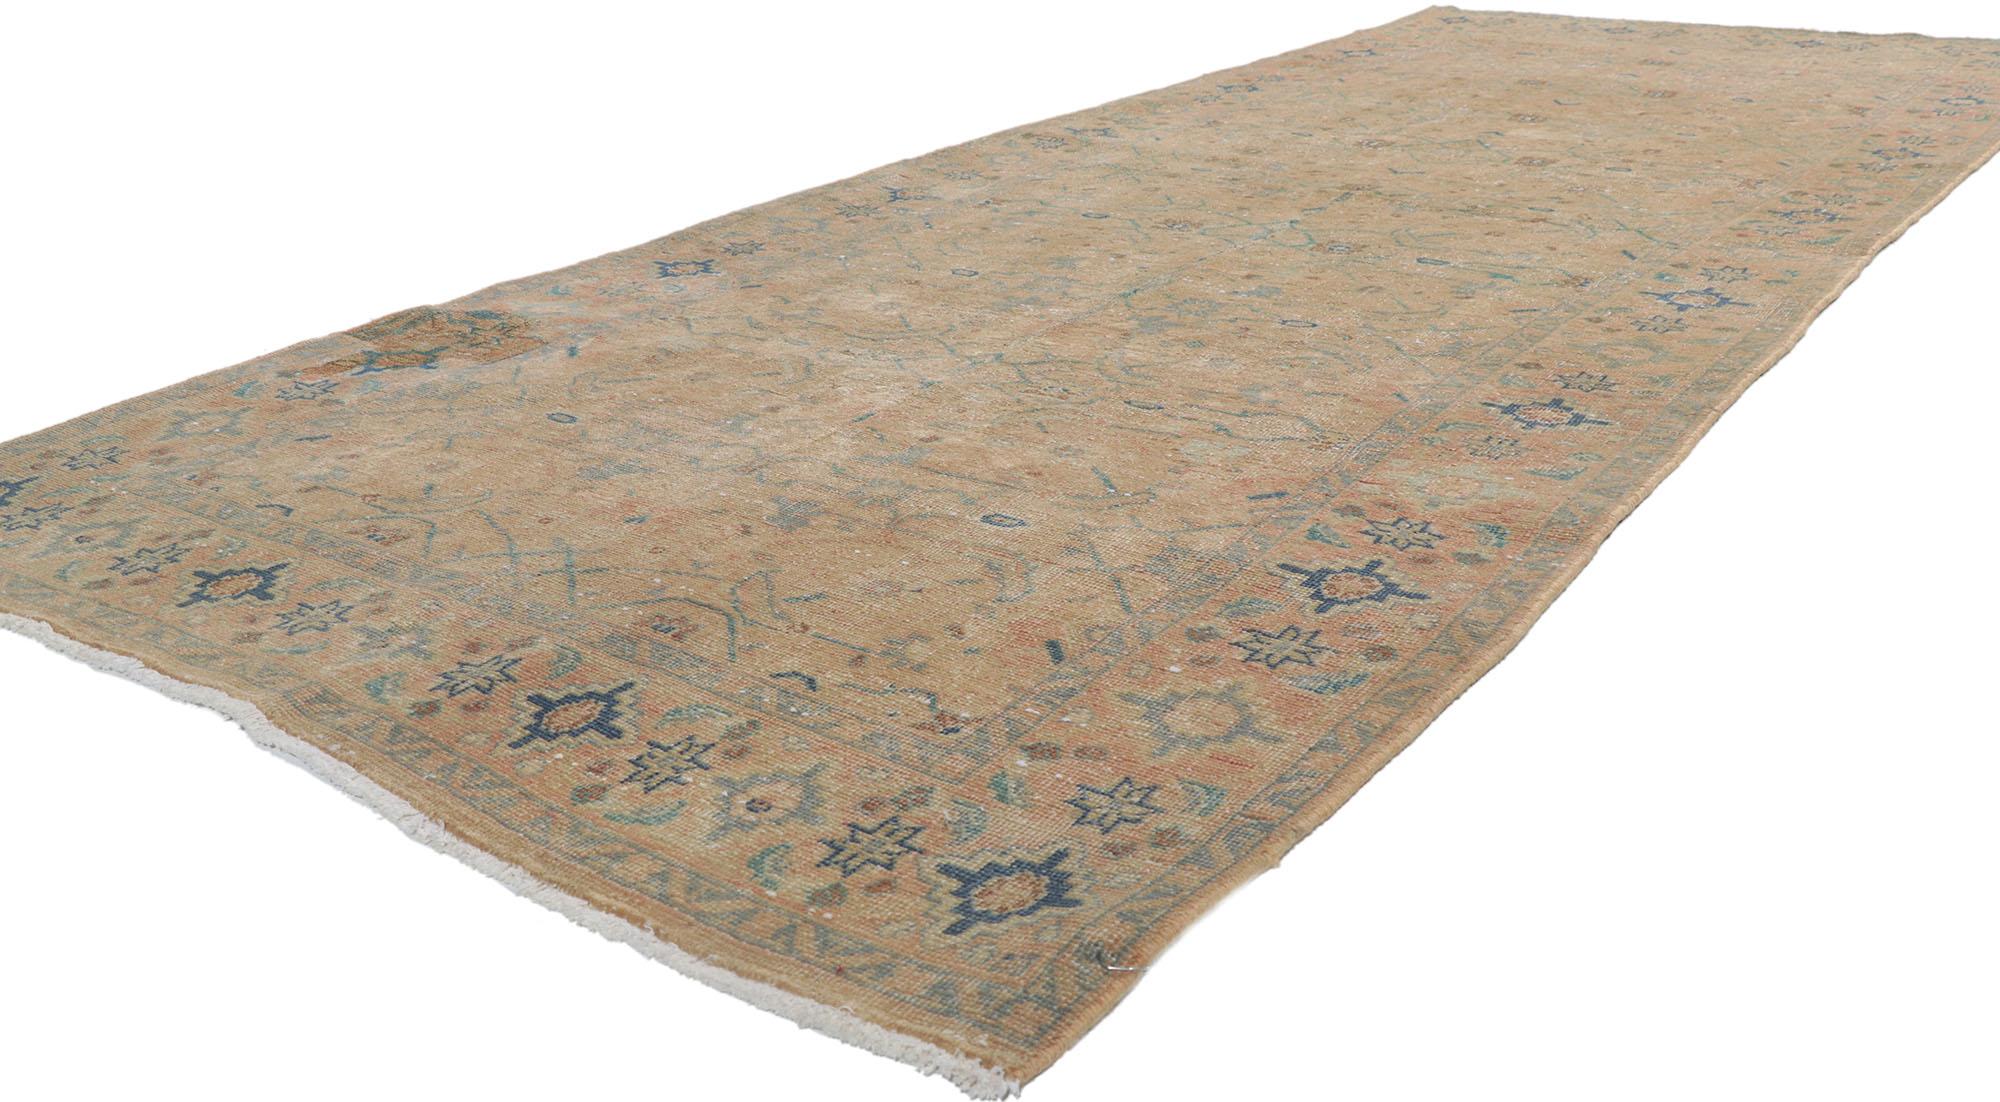 61012 Tapis Persan Tabriz Vintage Distressed, 04'02 x 10'11.
Préparez-vous à une aventure passionnante en vous laissant emporter par l'étreinte chaleureuse et réconfortante de ce tapis Tabriz persan vintage en laine nouée méticuleusement à la main.